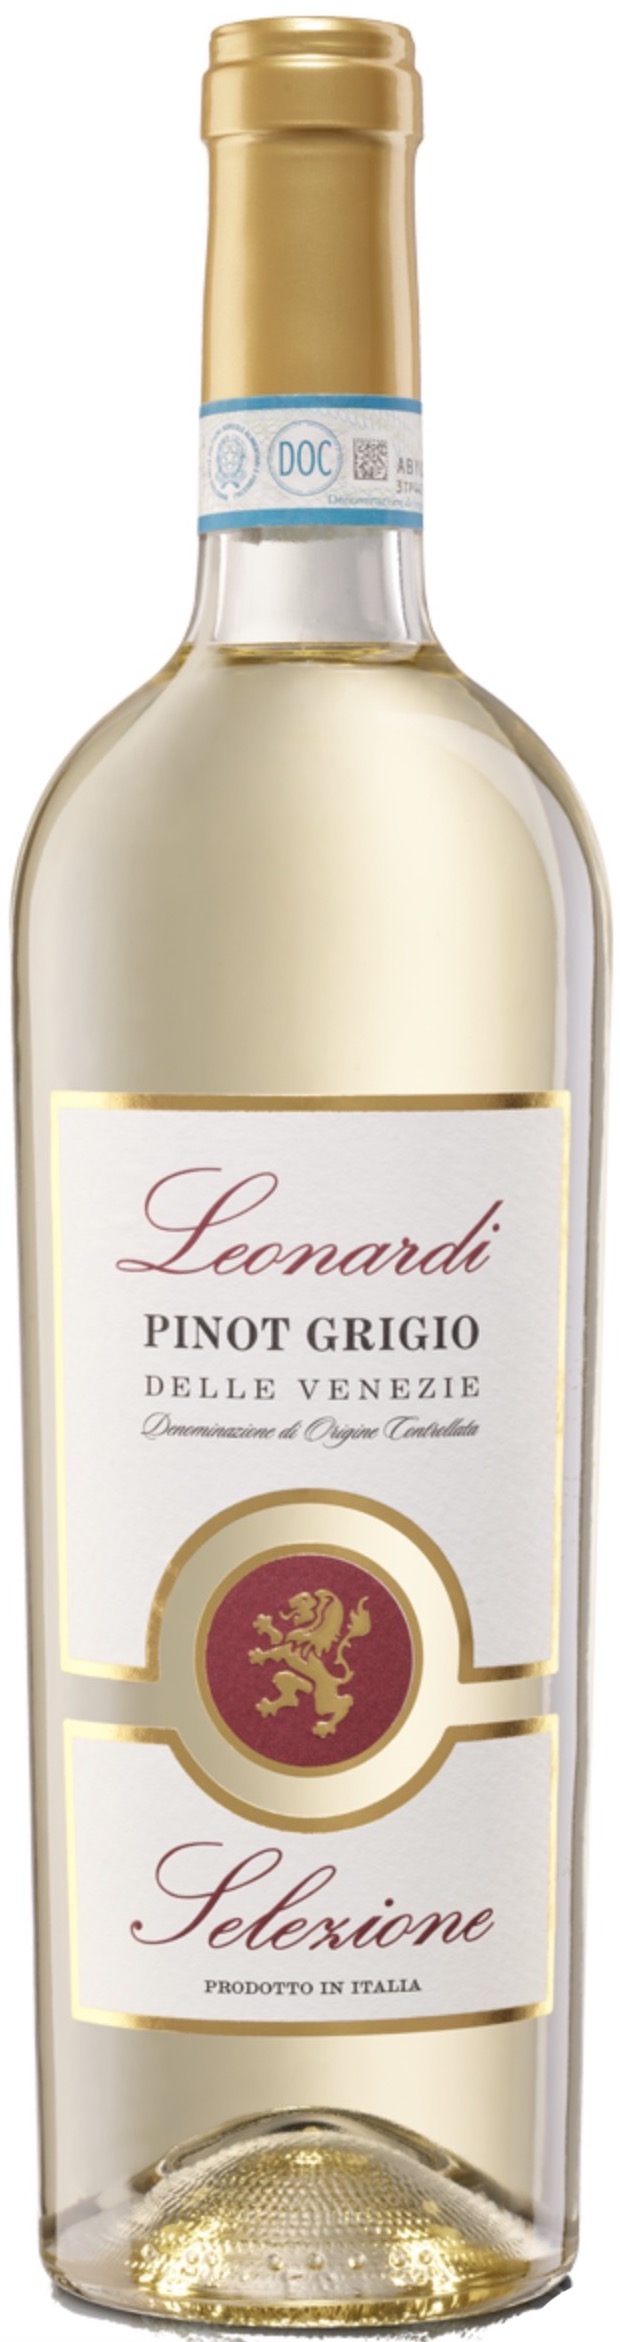 Leonardi Selezione Pinot Grigio Delle Venezie 12% vol. 0,75L